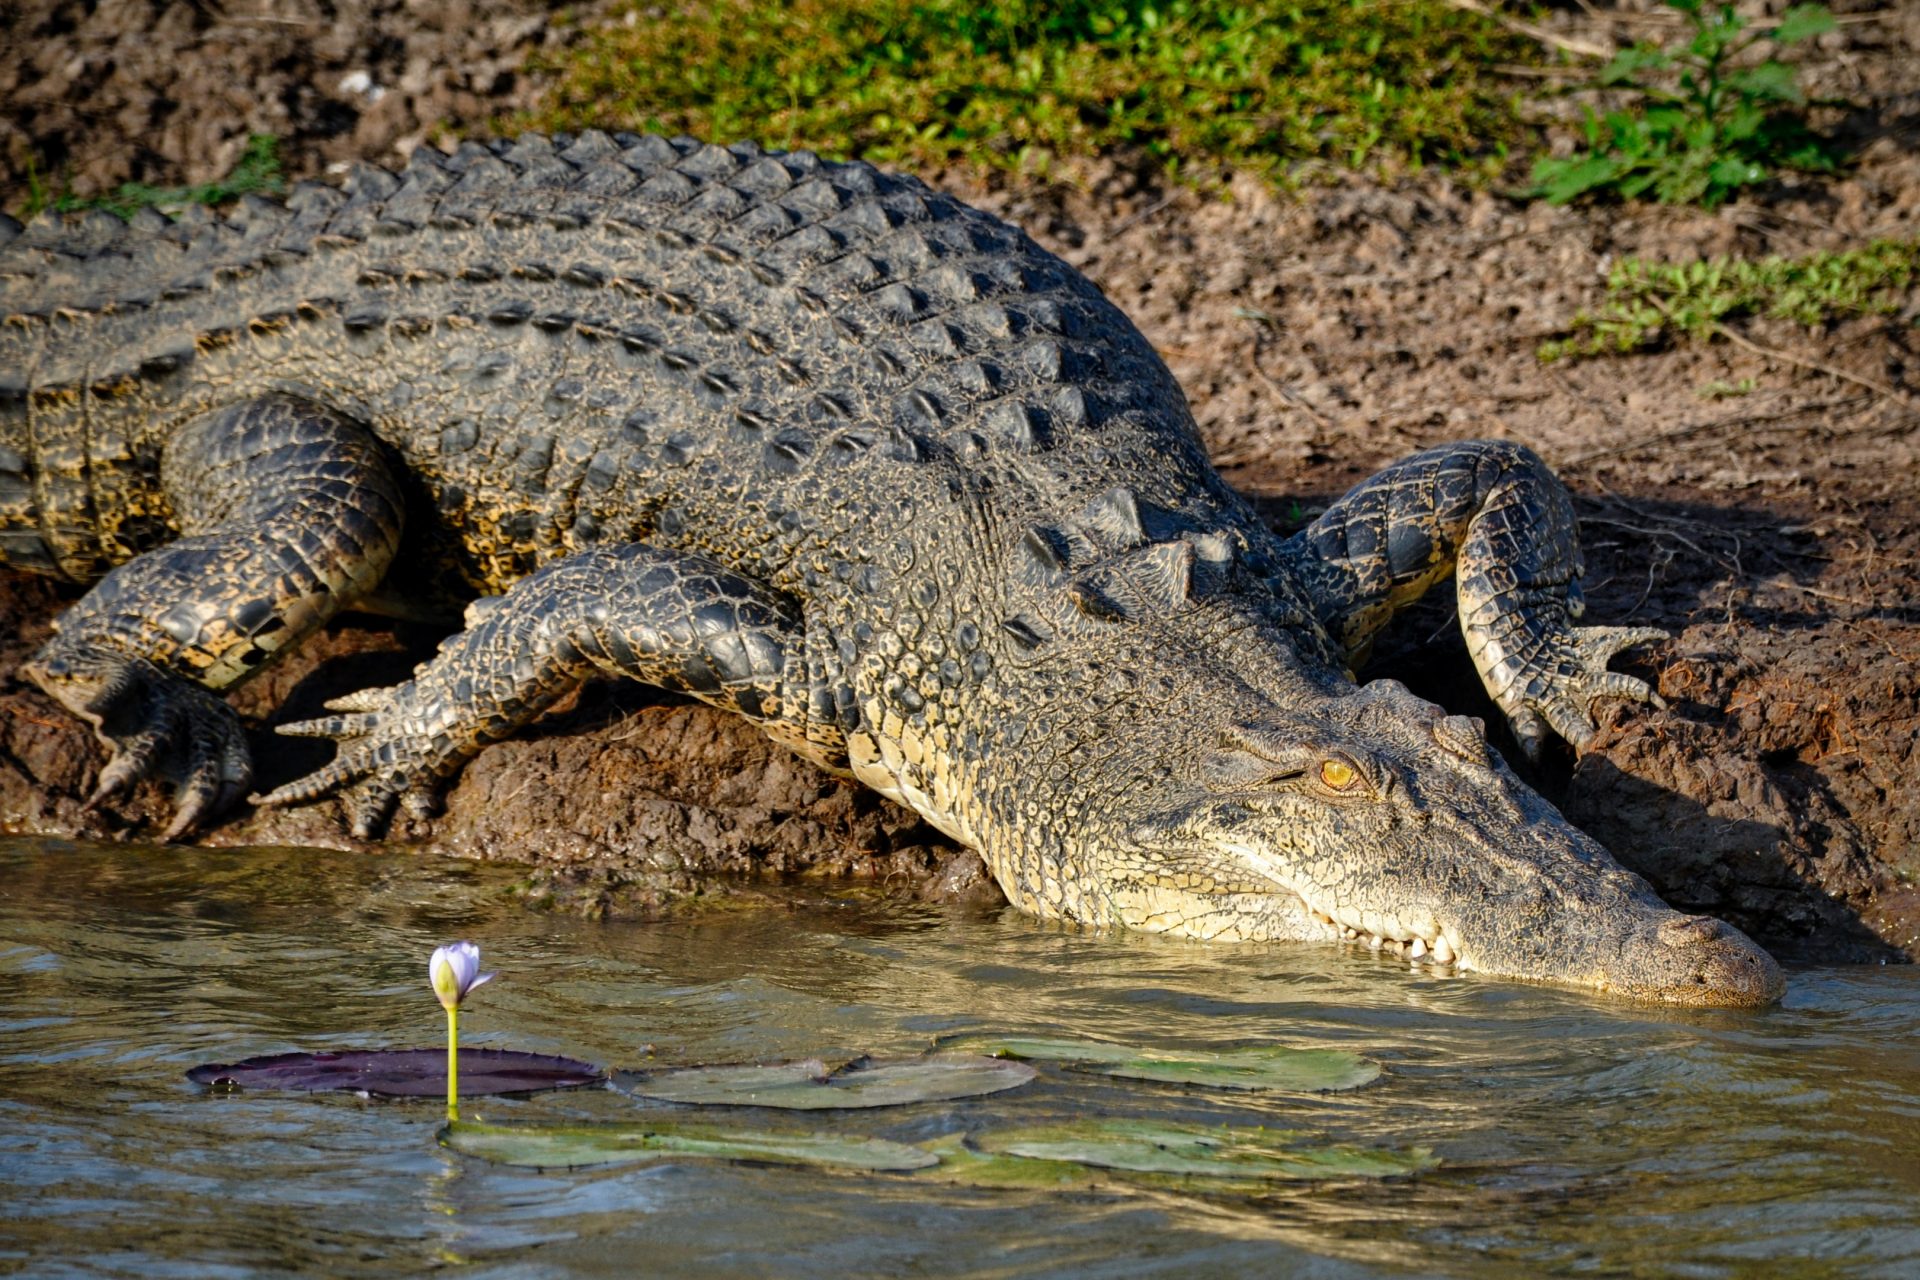 Certains crocodiles pourraient avoir agi sous l'effet de l'inquiétude pour leurs petits